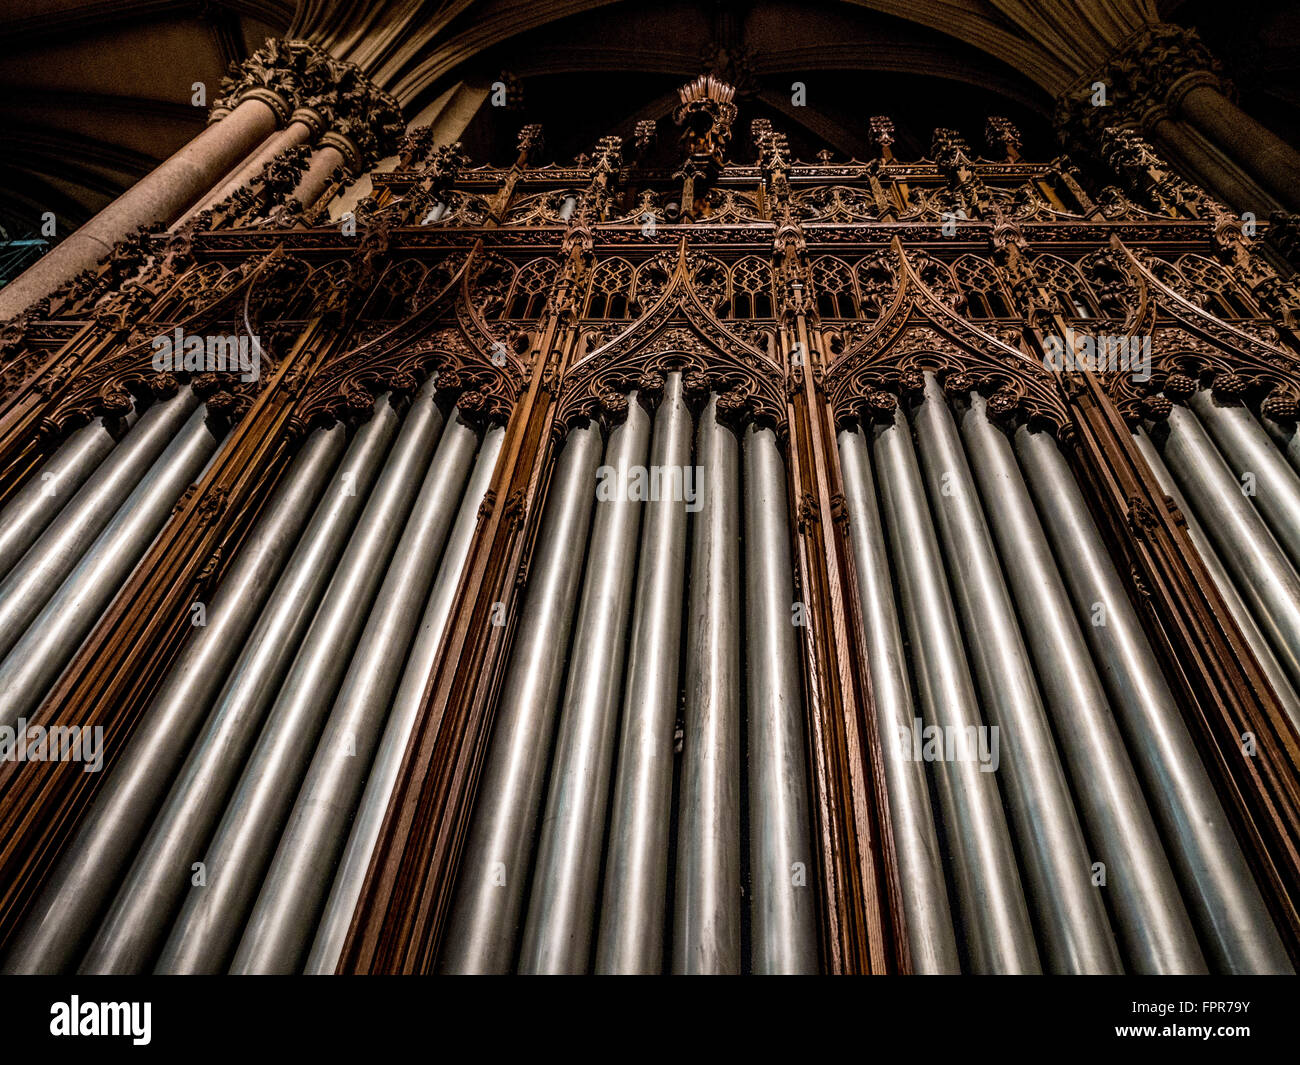 Organ pipes at St. Patrick's Cathedral, New York city, USA. Stock Photo